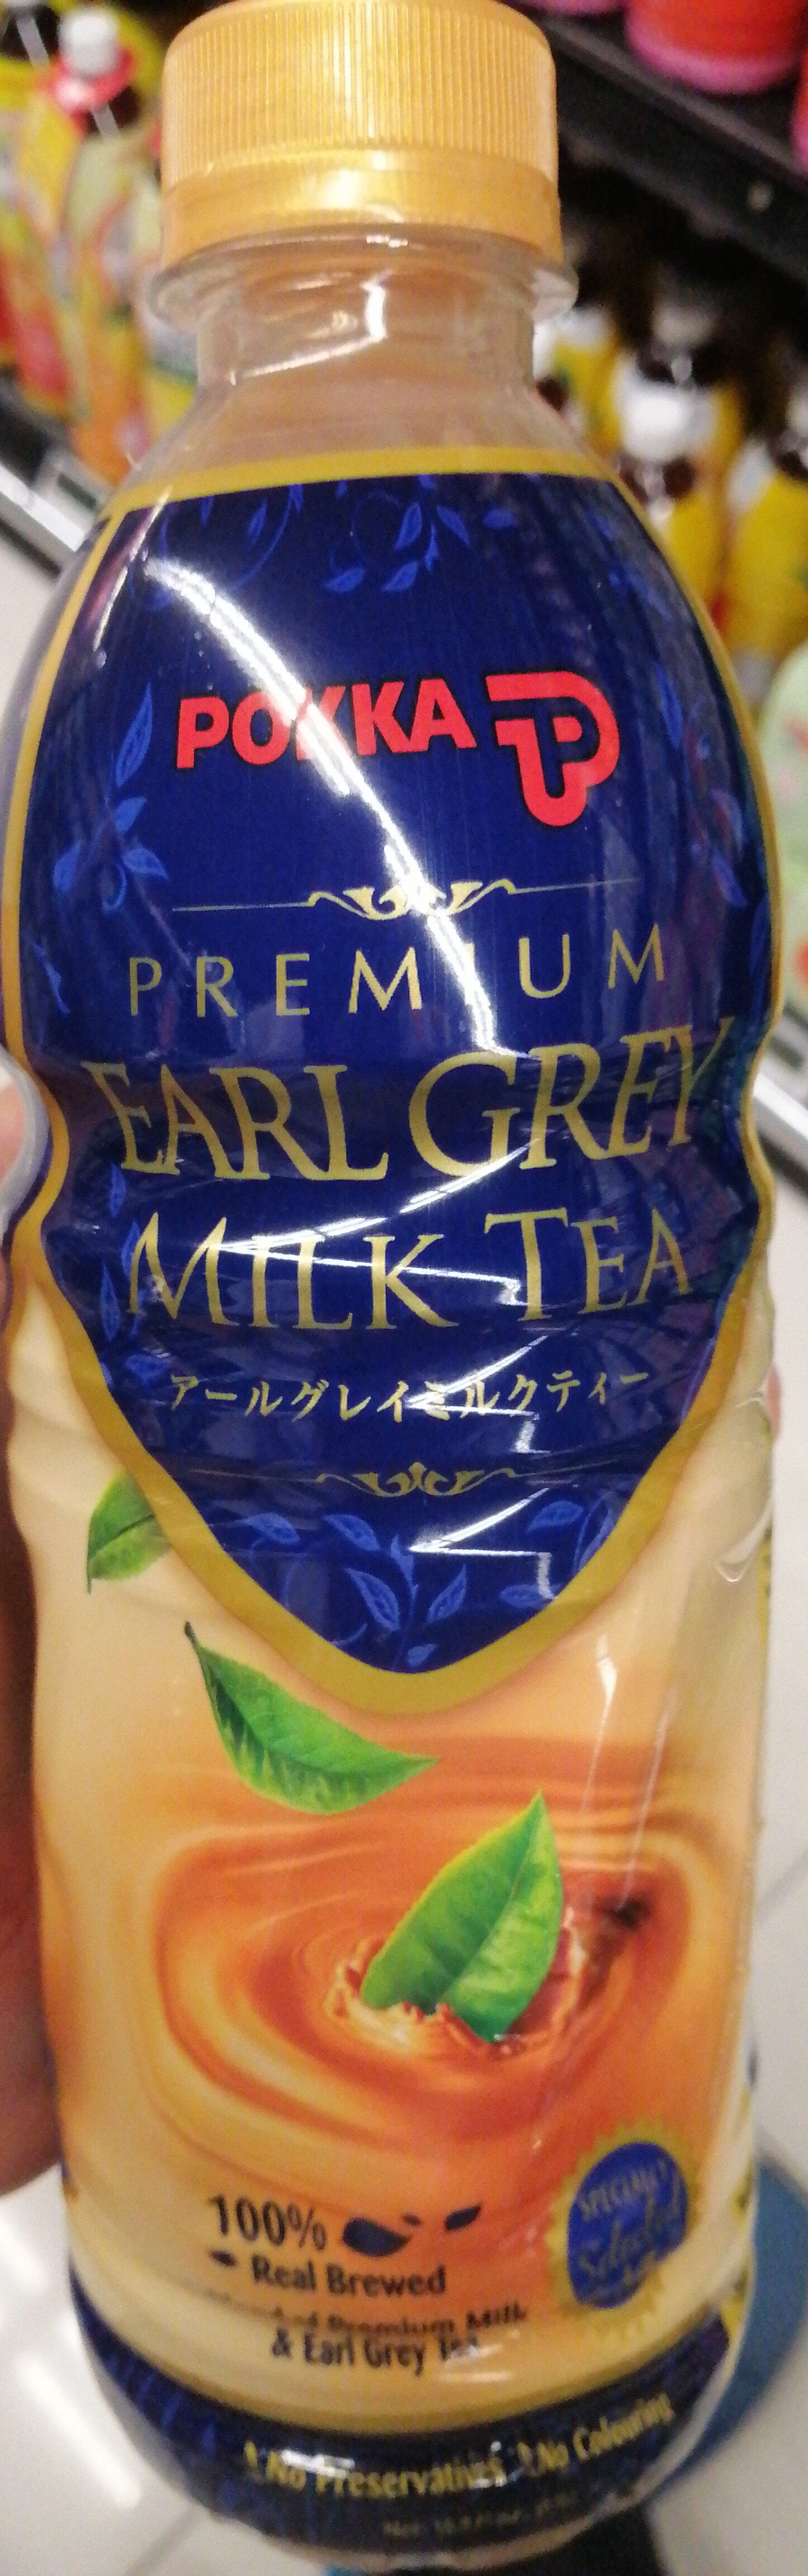 Pokka Premium Earl Grey Milk Tea - Prodotto - en